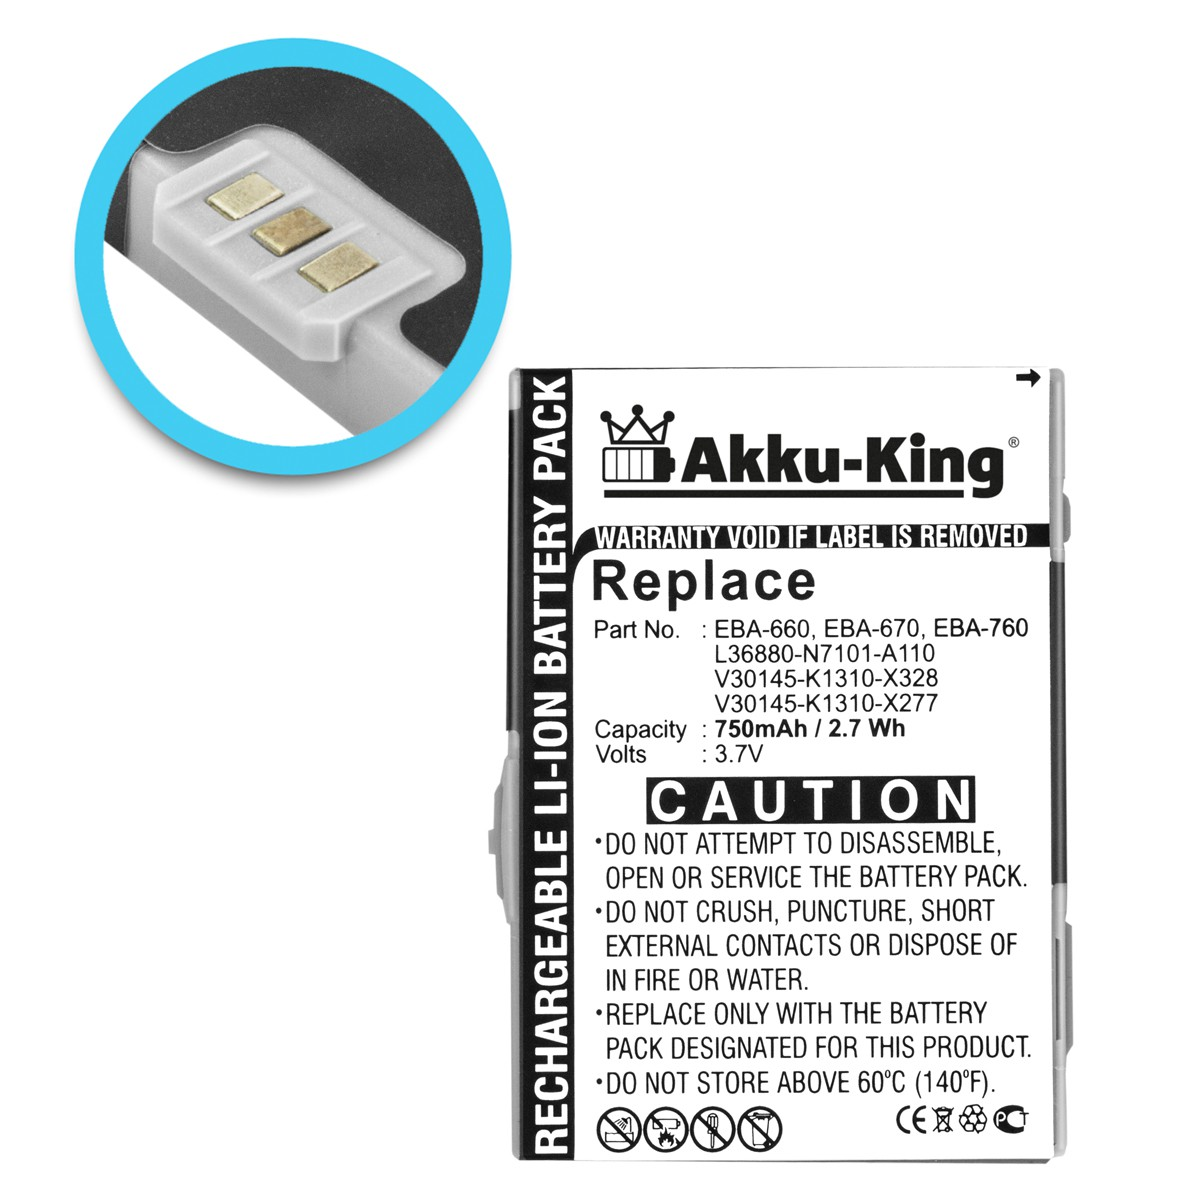 750mAh AKKU-KING Siemens Handy-Akku, Li-Ion kompatibel Akku mit EBA-660 3.7 Volt,